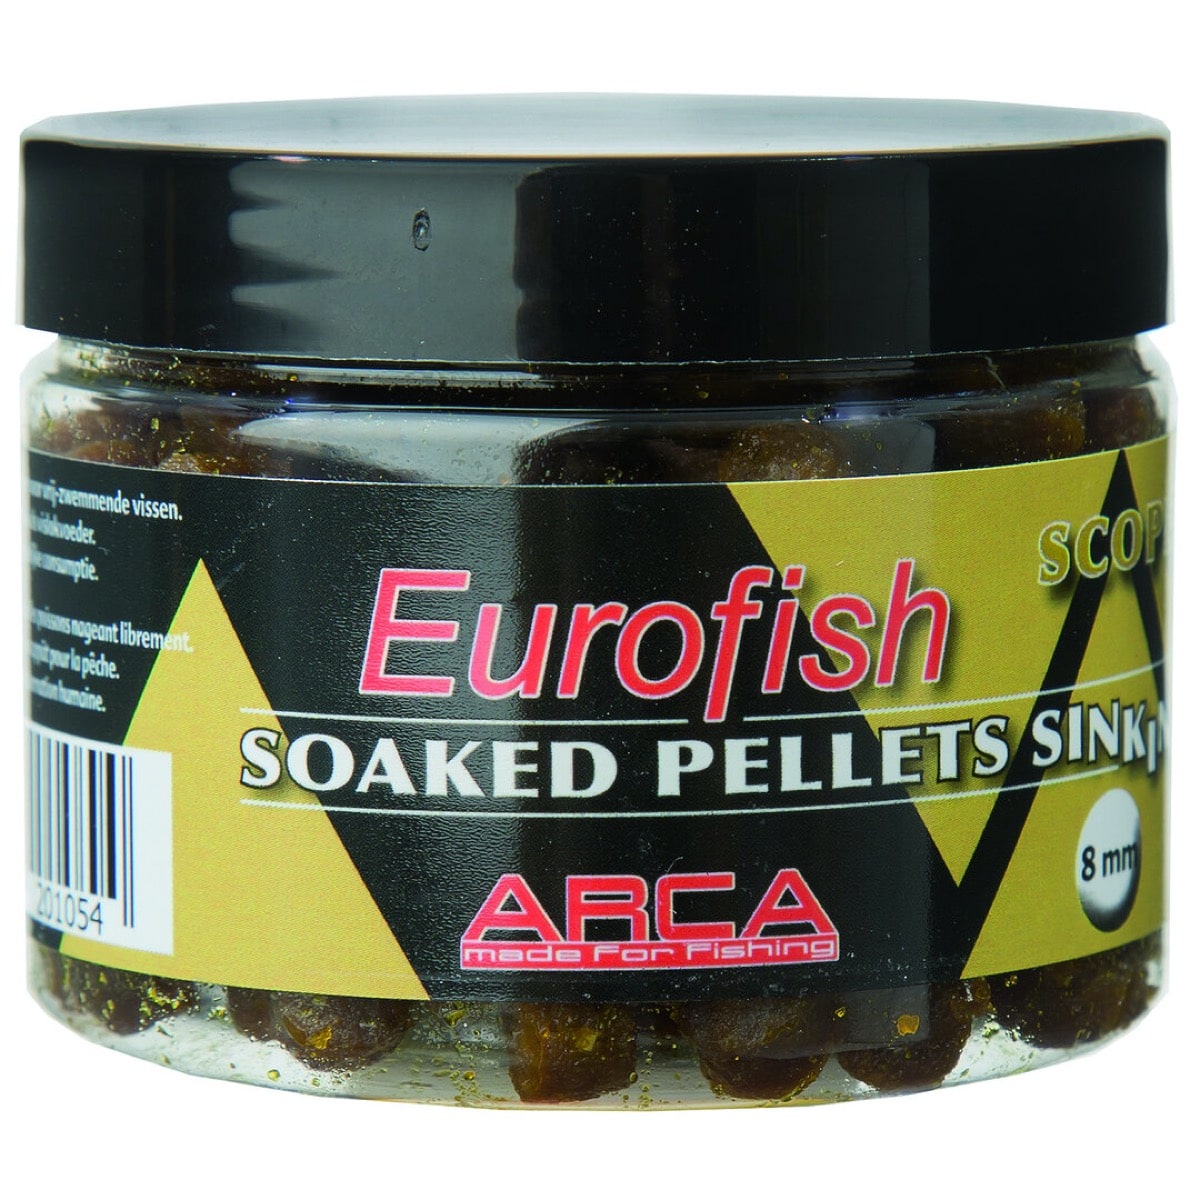 Eurofish soaked pellets sinking 8mm scopex